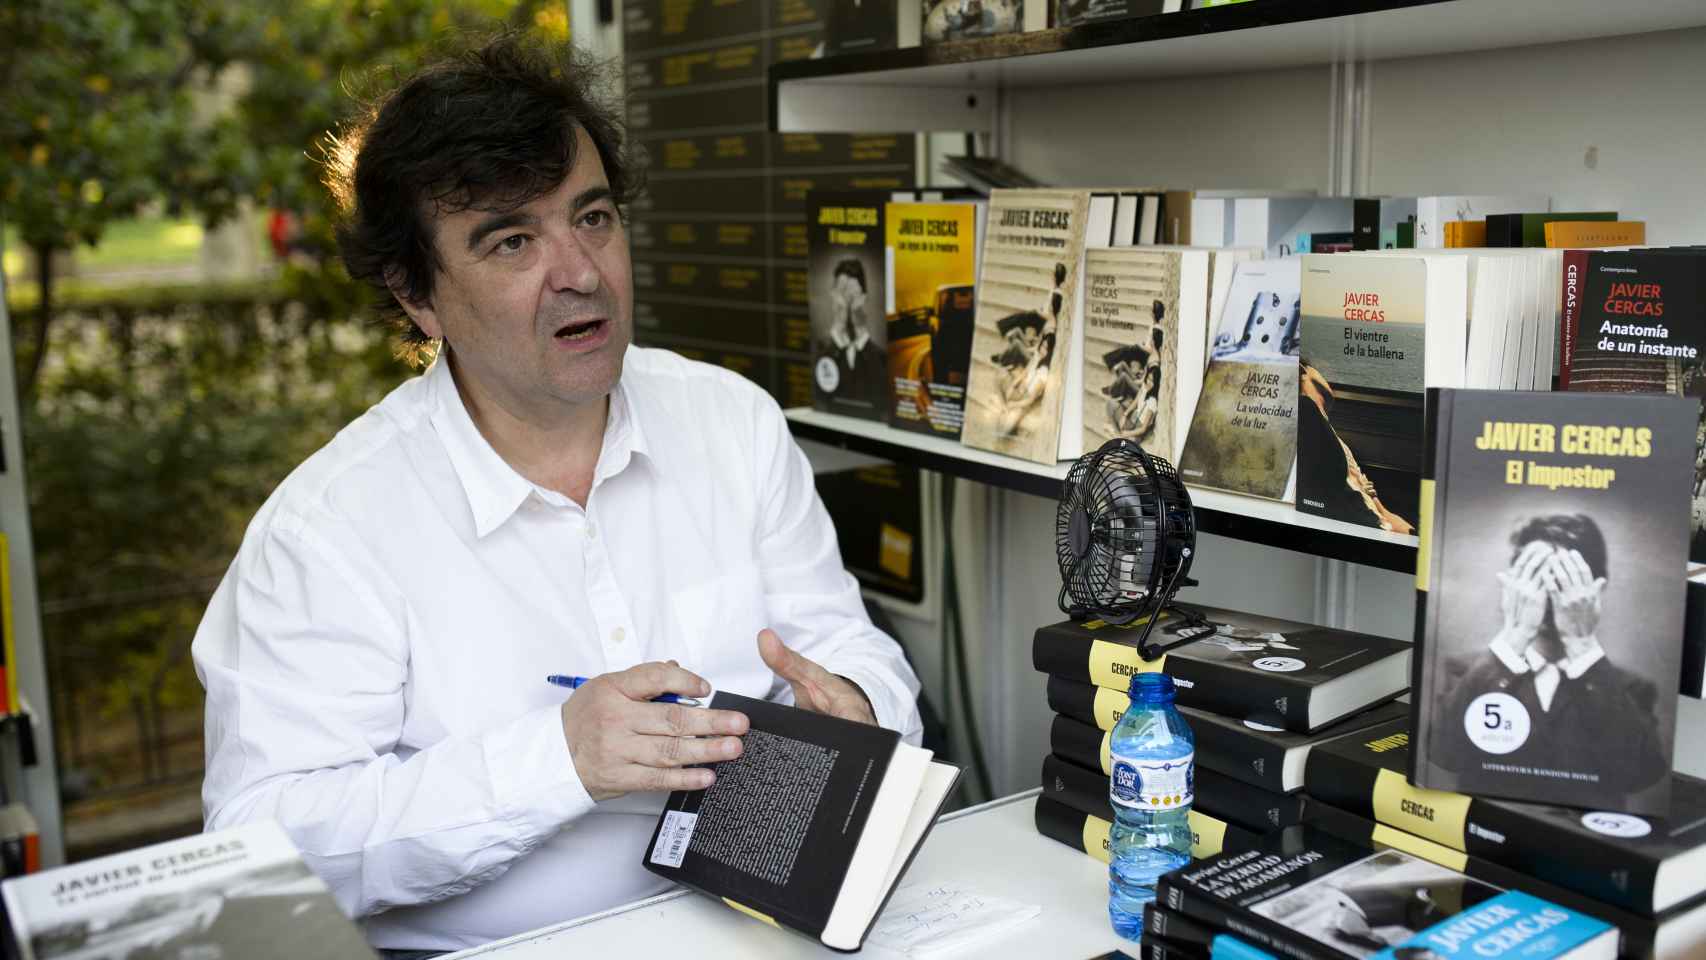 Javier Cercas en la presentación de uno de sus libros.